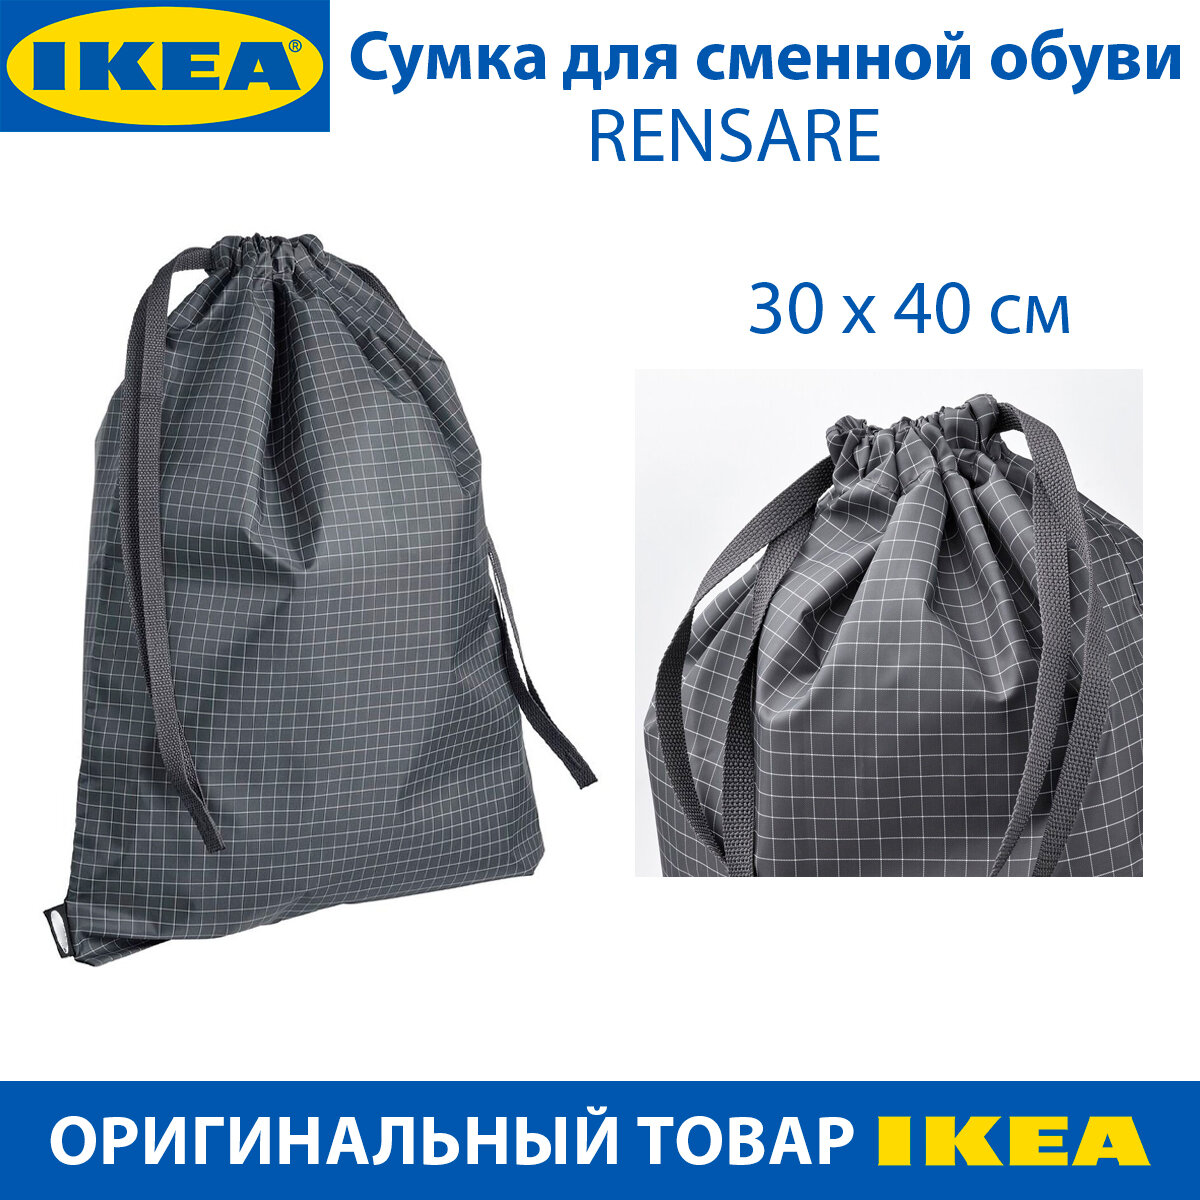 Сумка для сменной обуви IKEA - RENSARE (ренсаре), черная в клетку, 30х40 см, 1шт